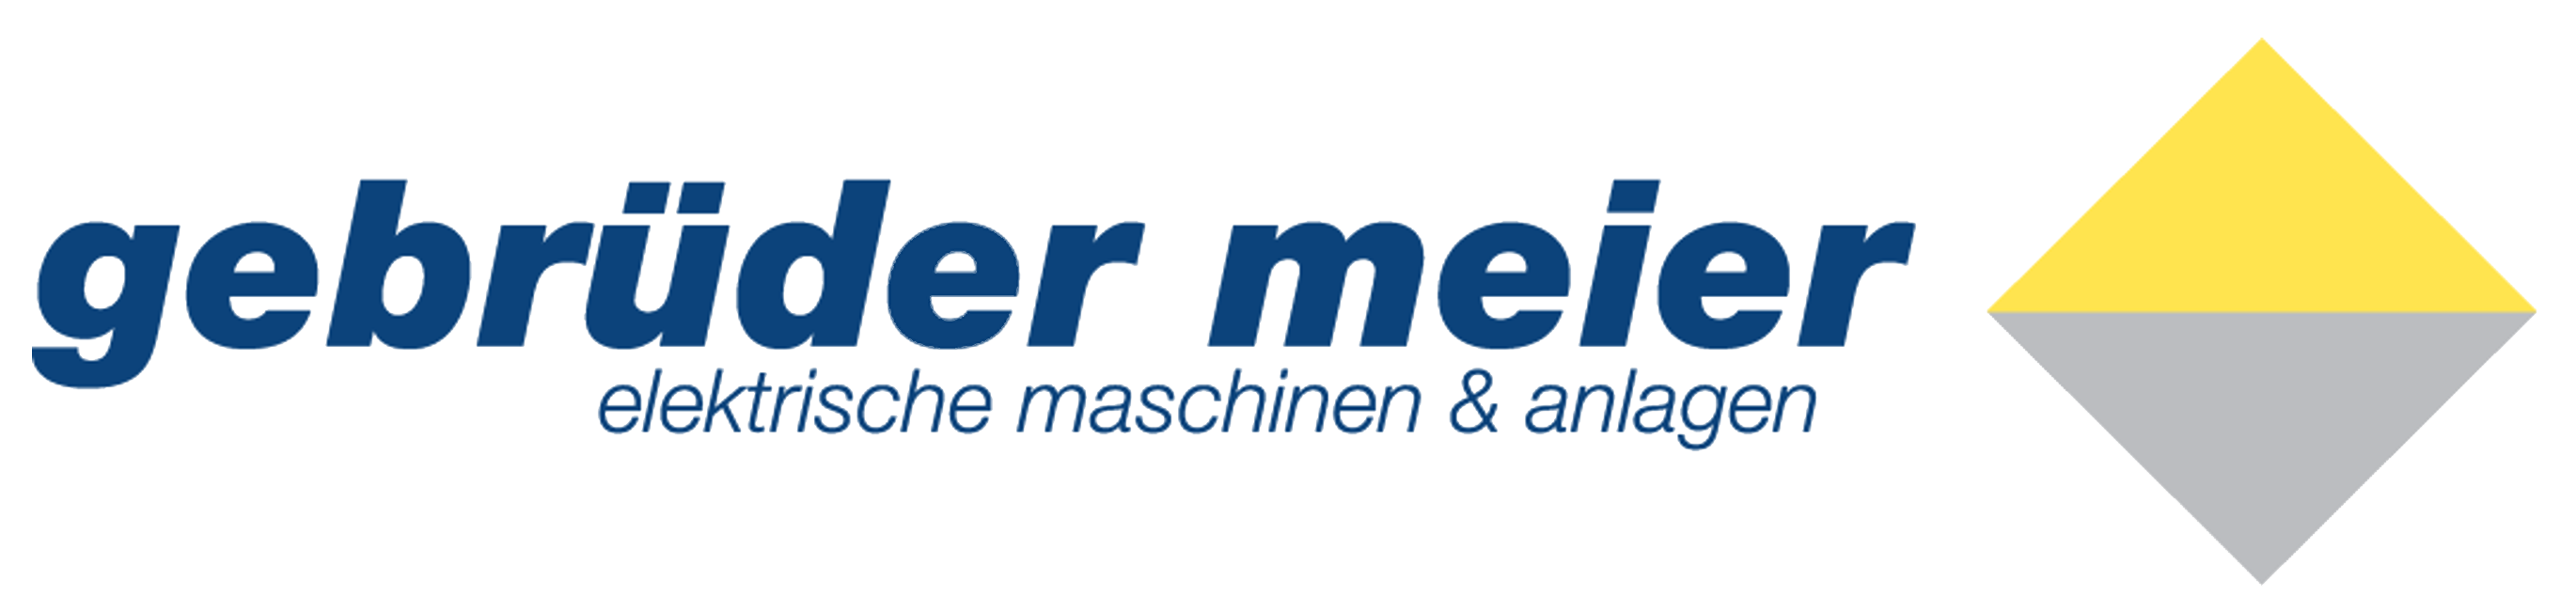 Gebruder Meier Holding